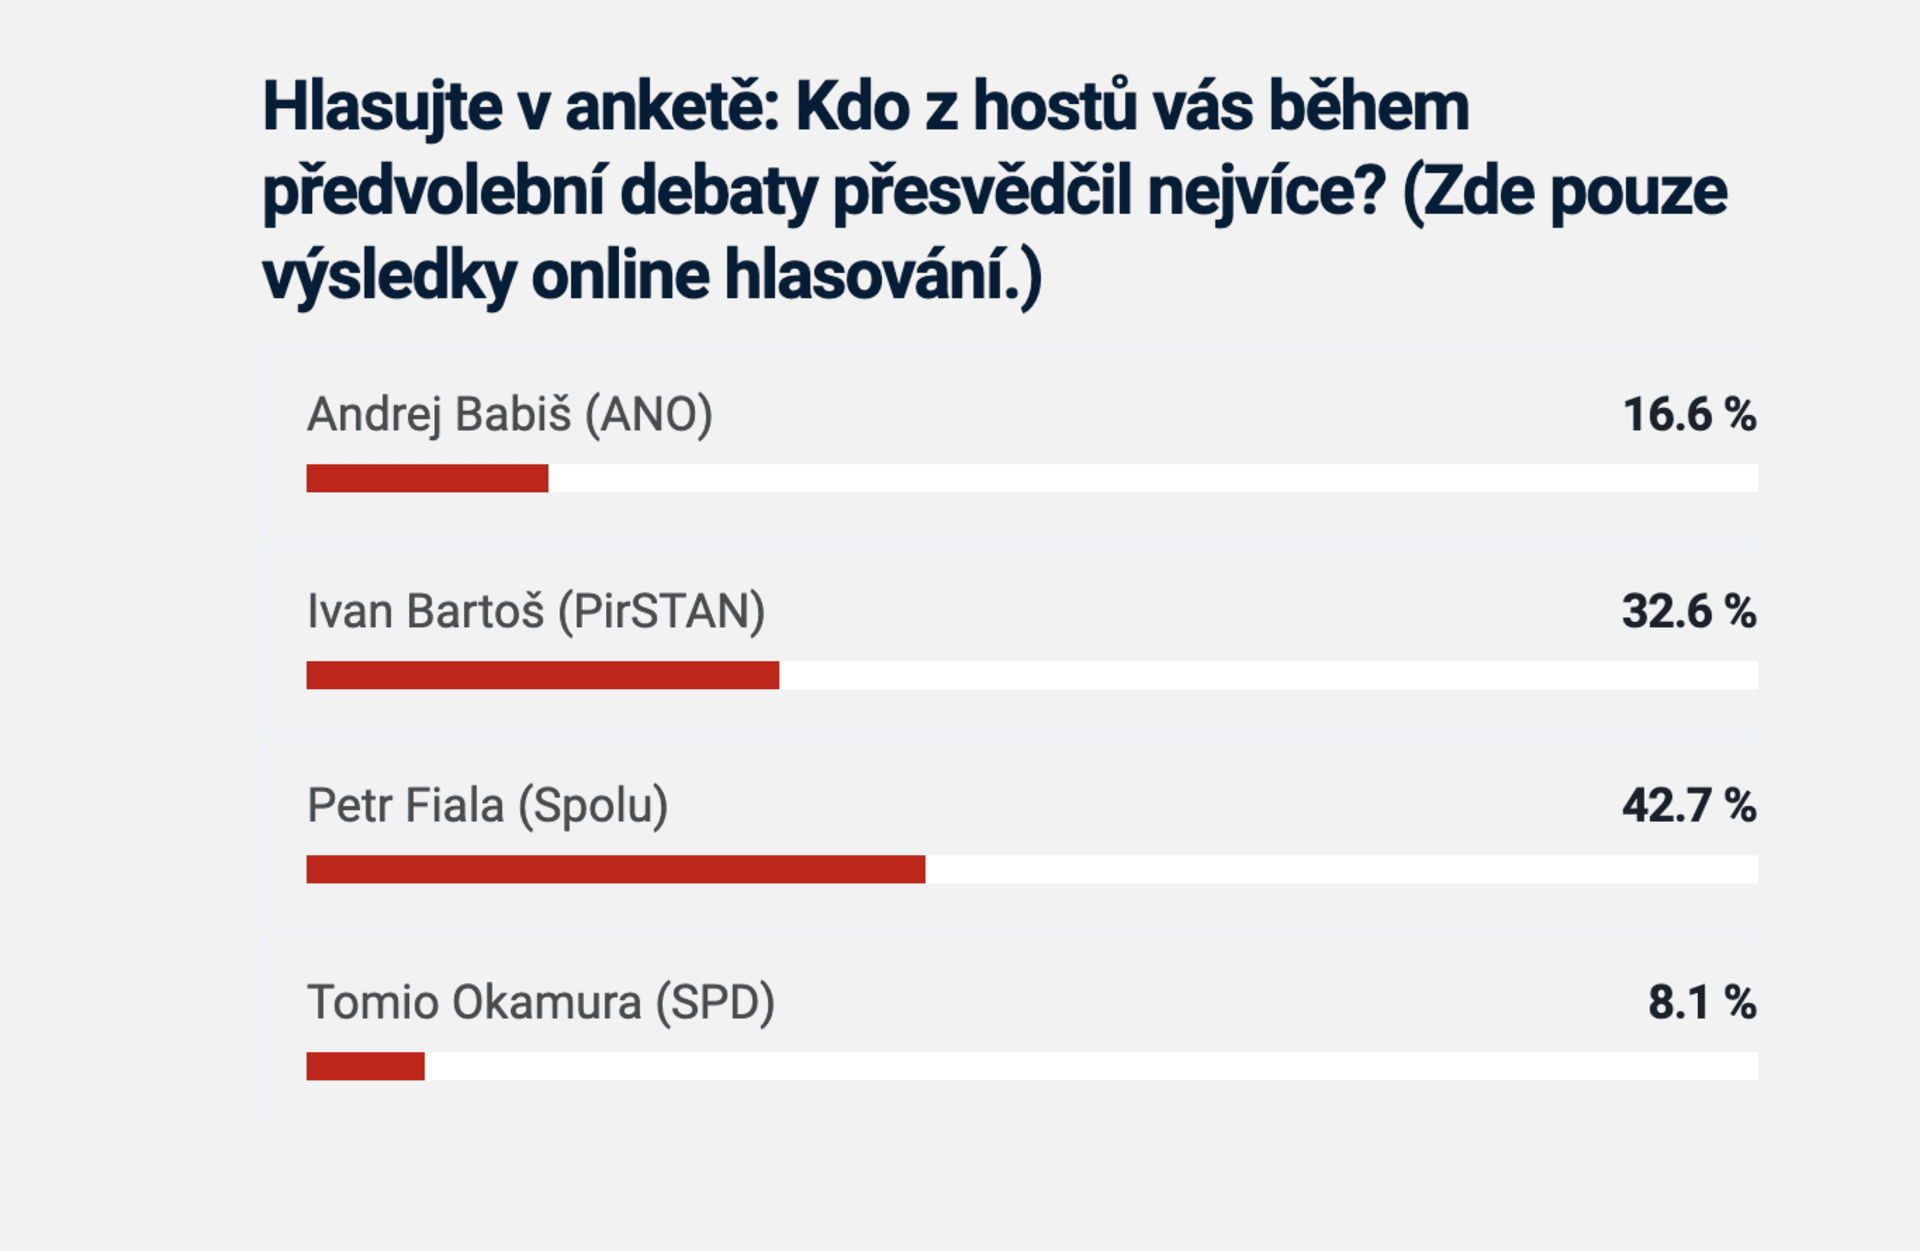 Výsledky online hlasování na webu CNNPrima.cz